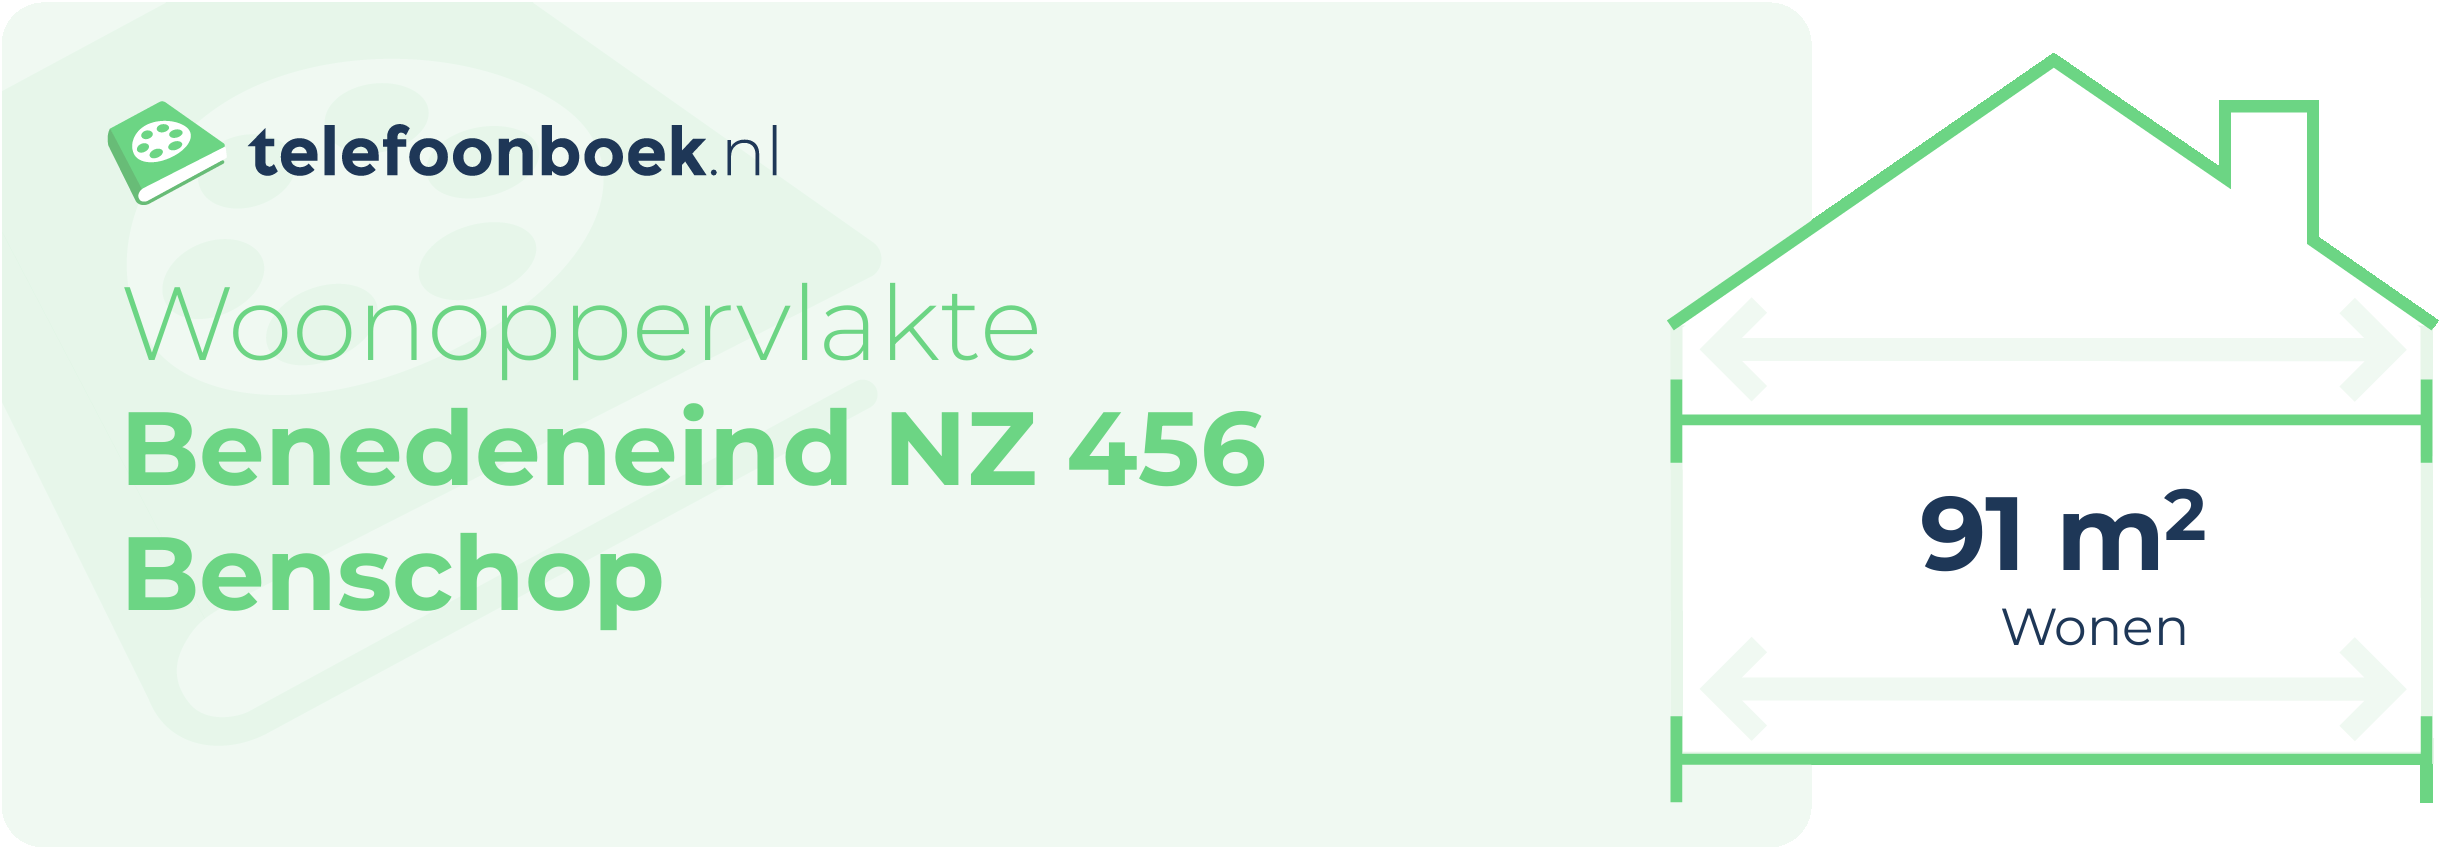 Woonoppervlakte Benedeneind NZ 456 Benschop